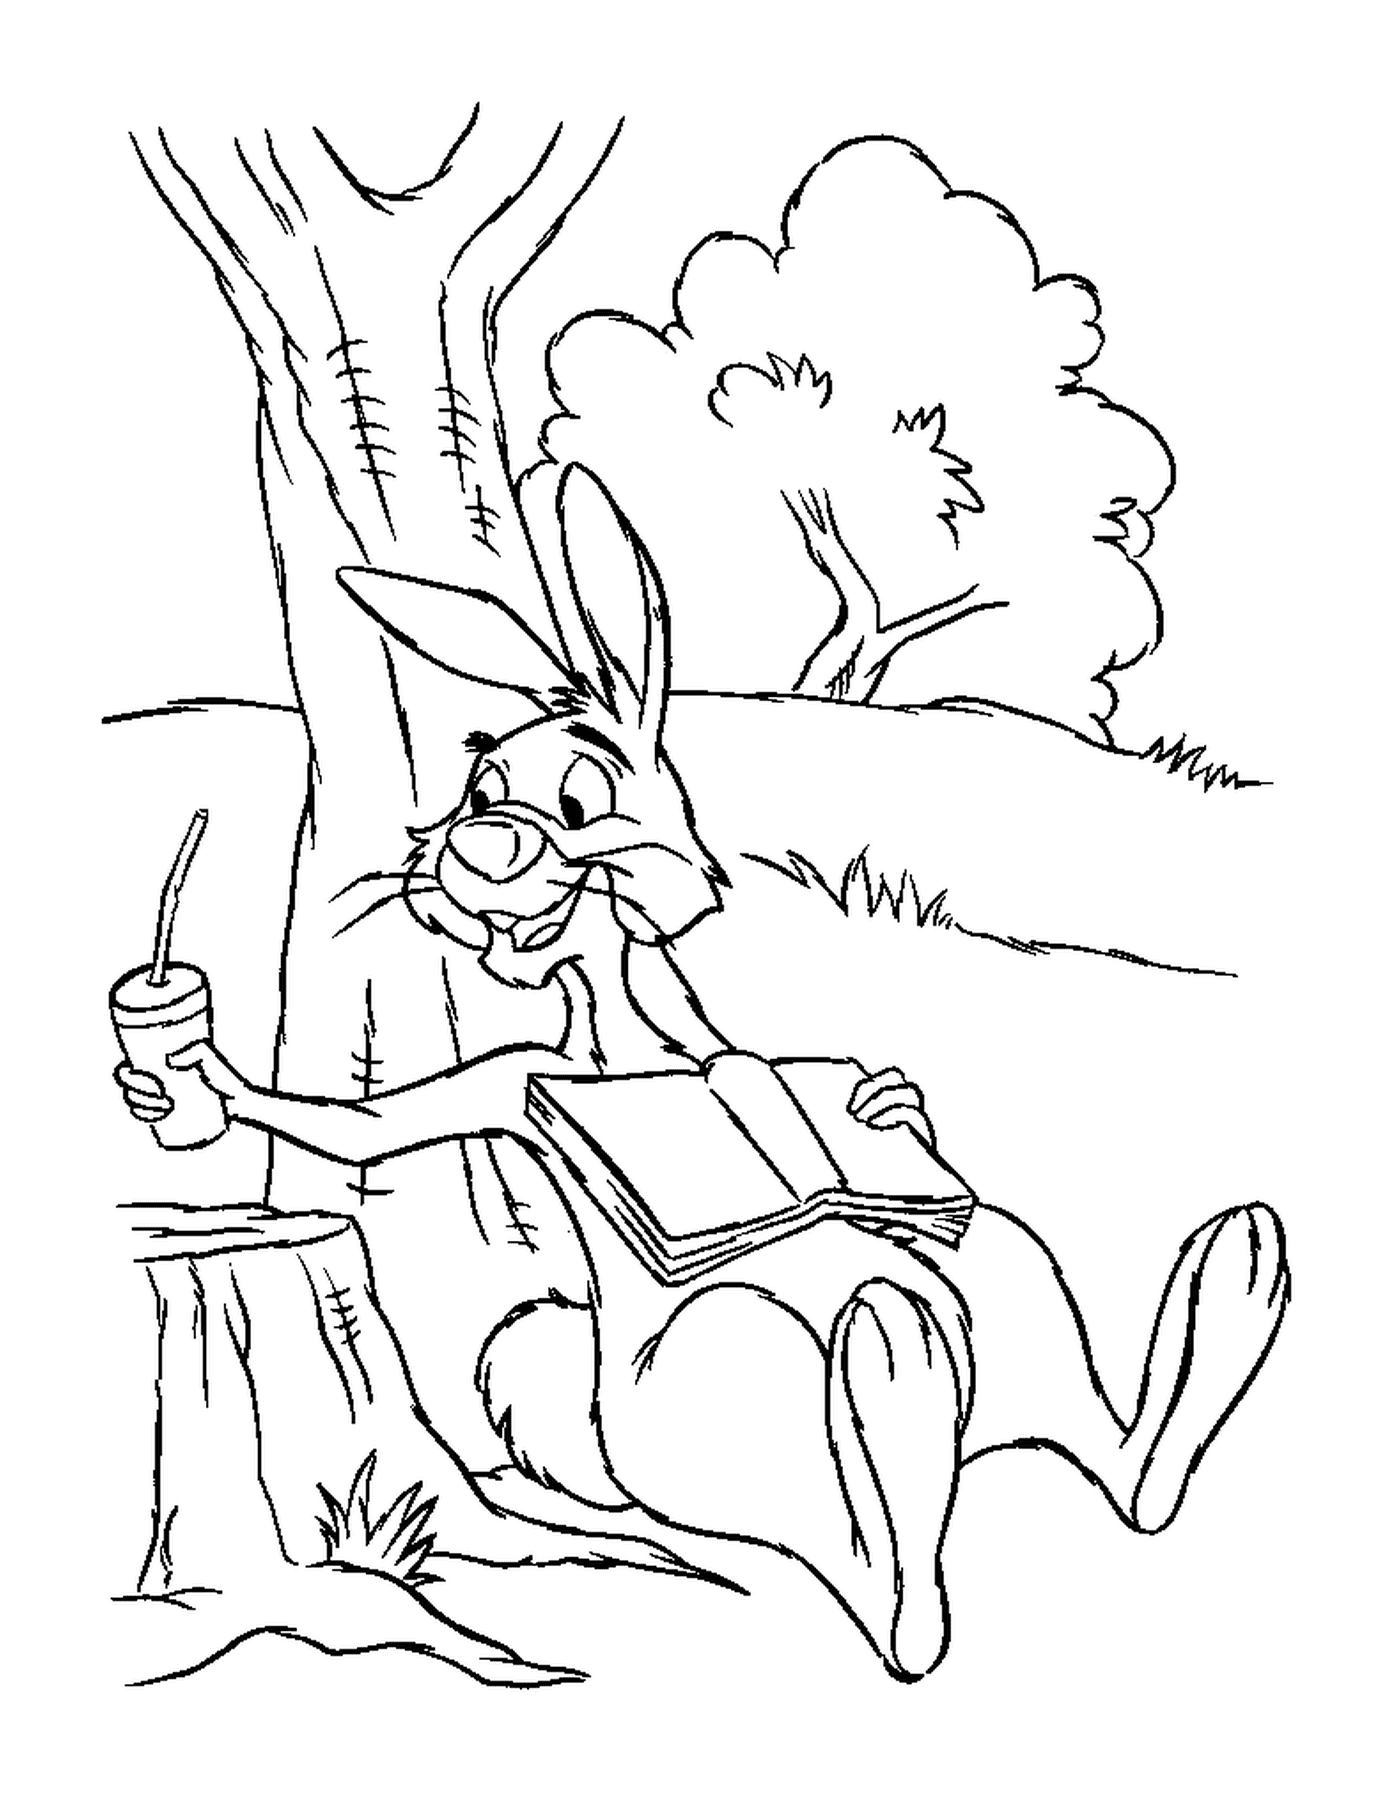   Un lapin assis sur une souche près d'un arbre avec un jus de carotte 